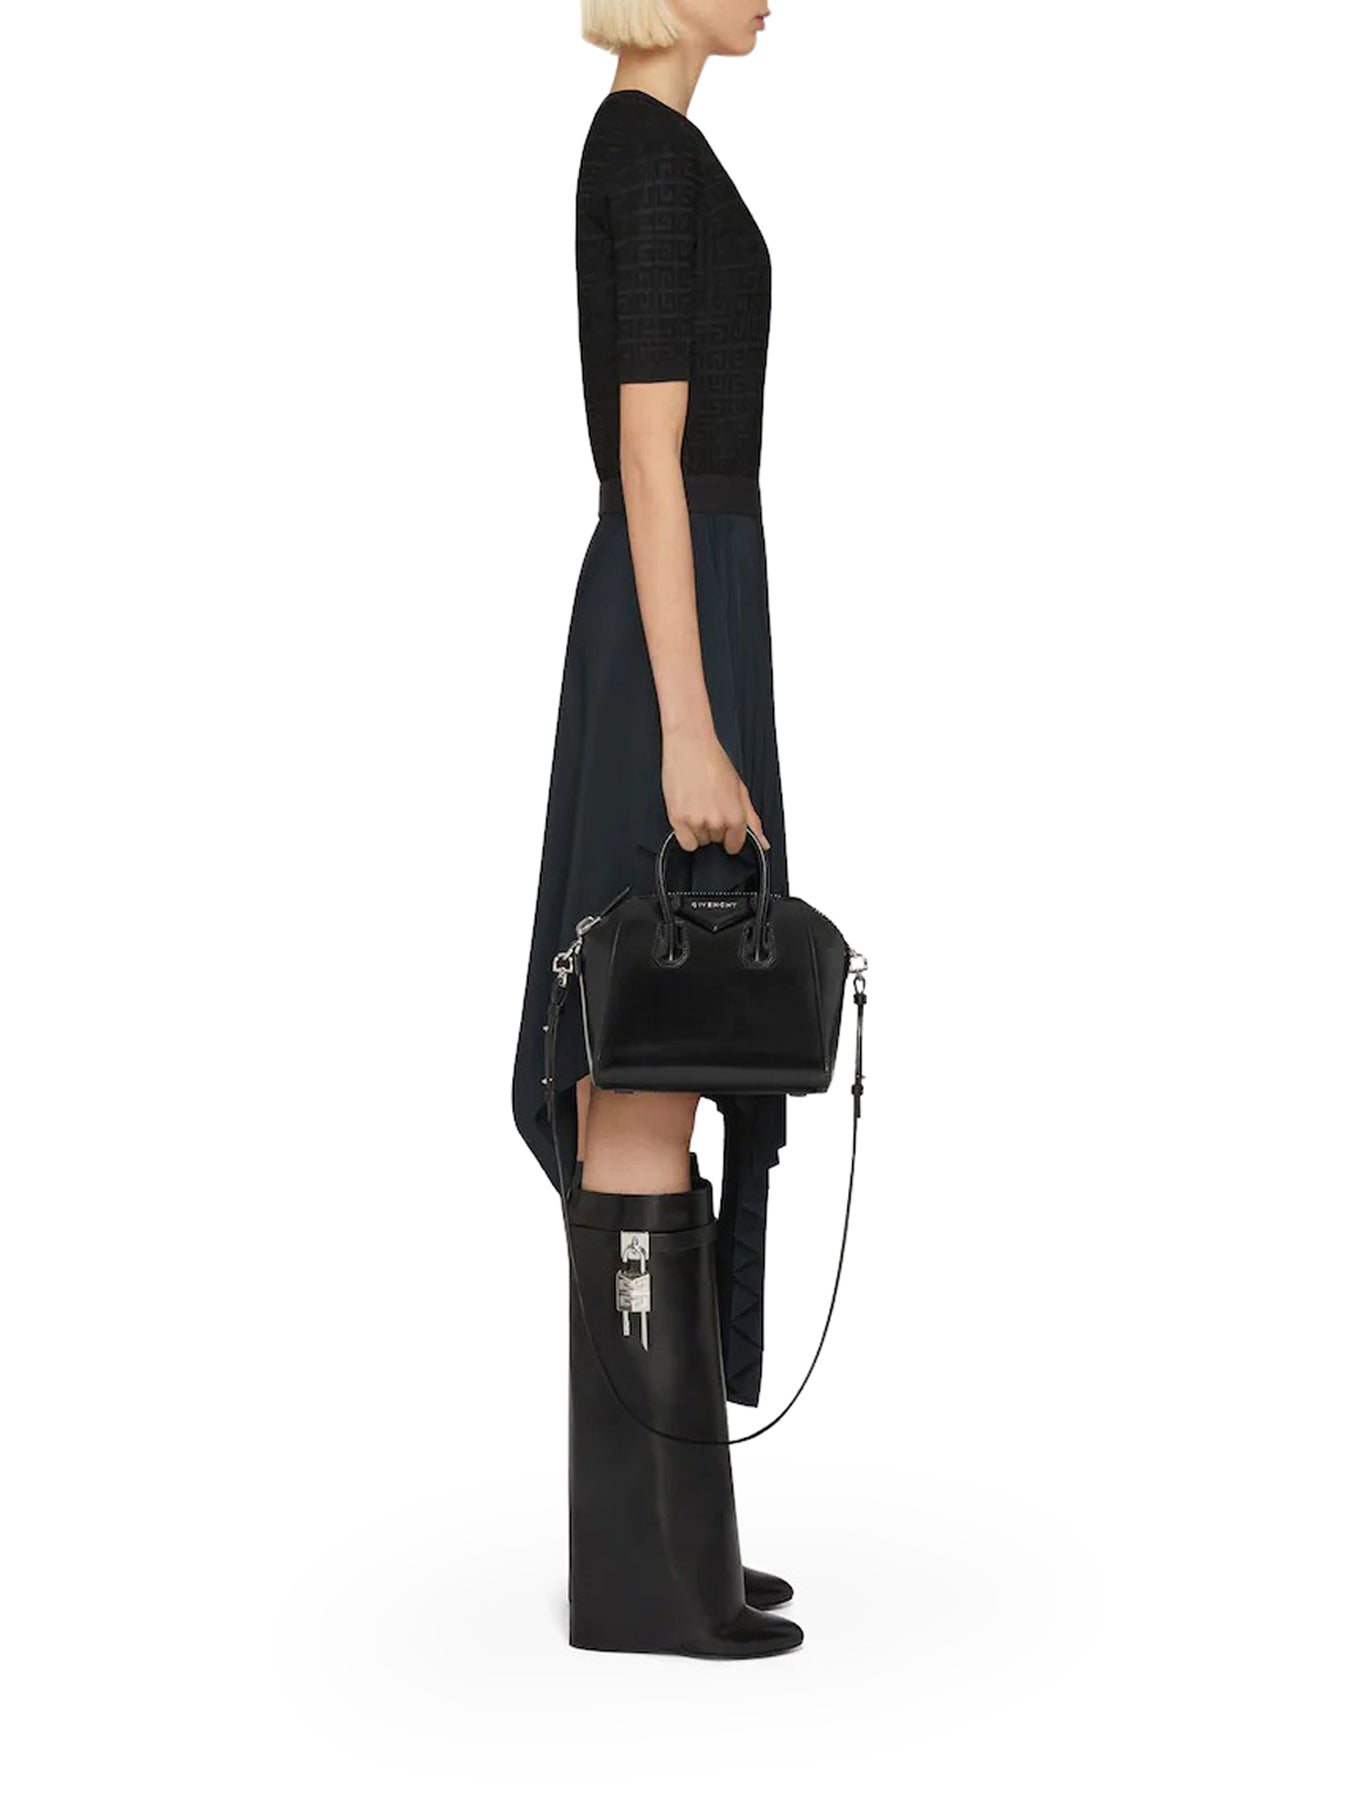 Antigona Mini Leather Tote in Black - Givenchy